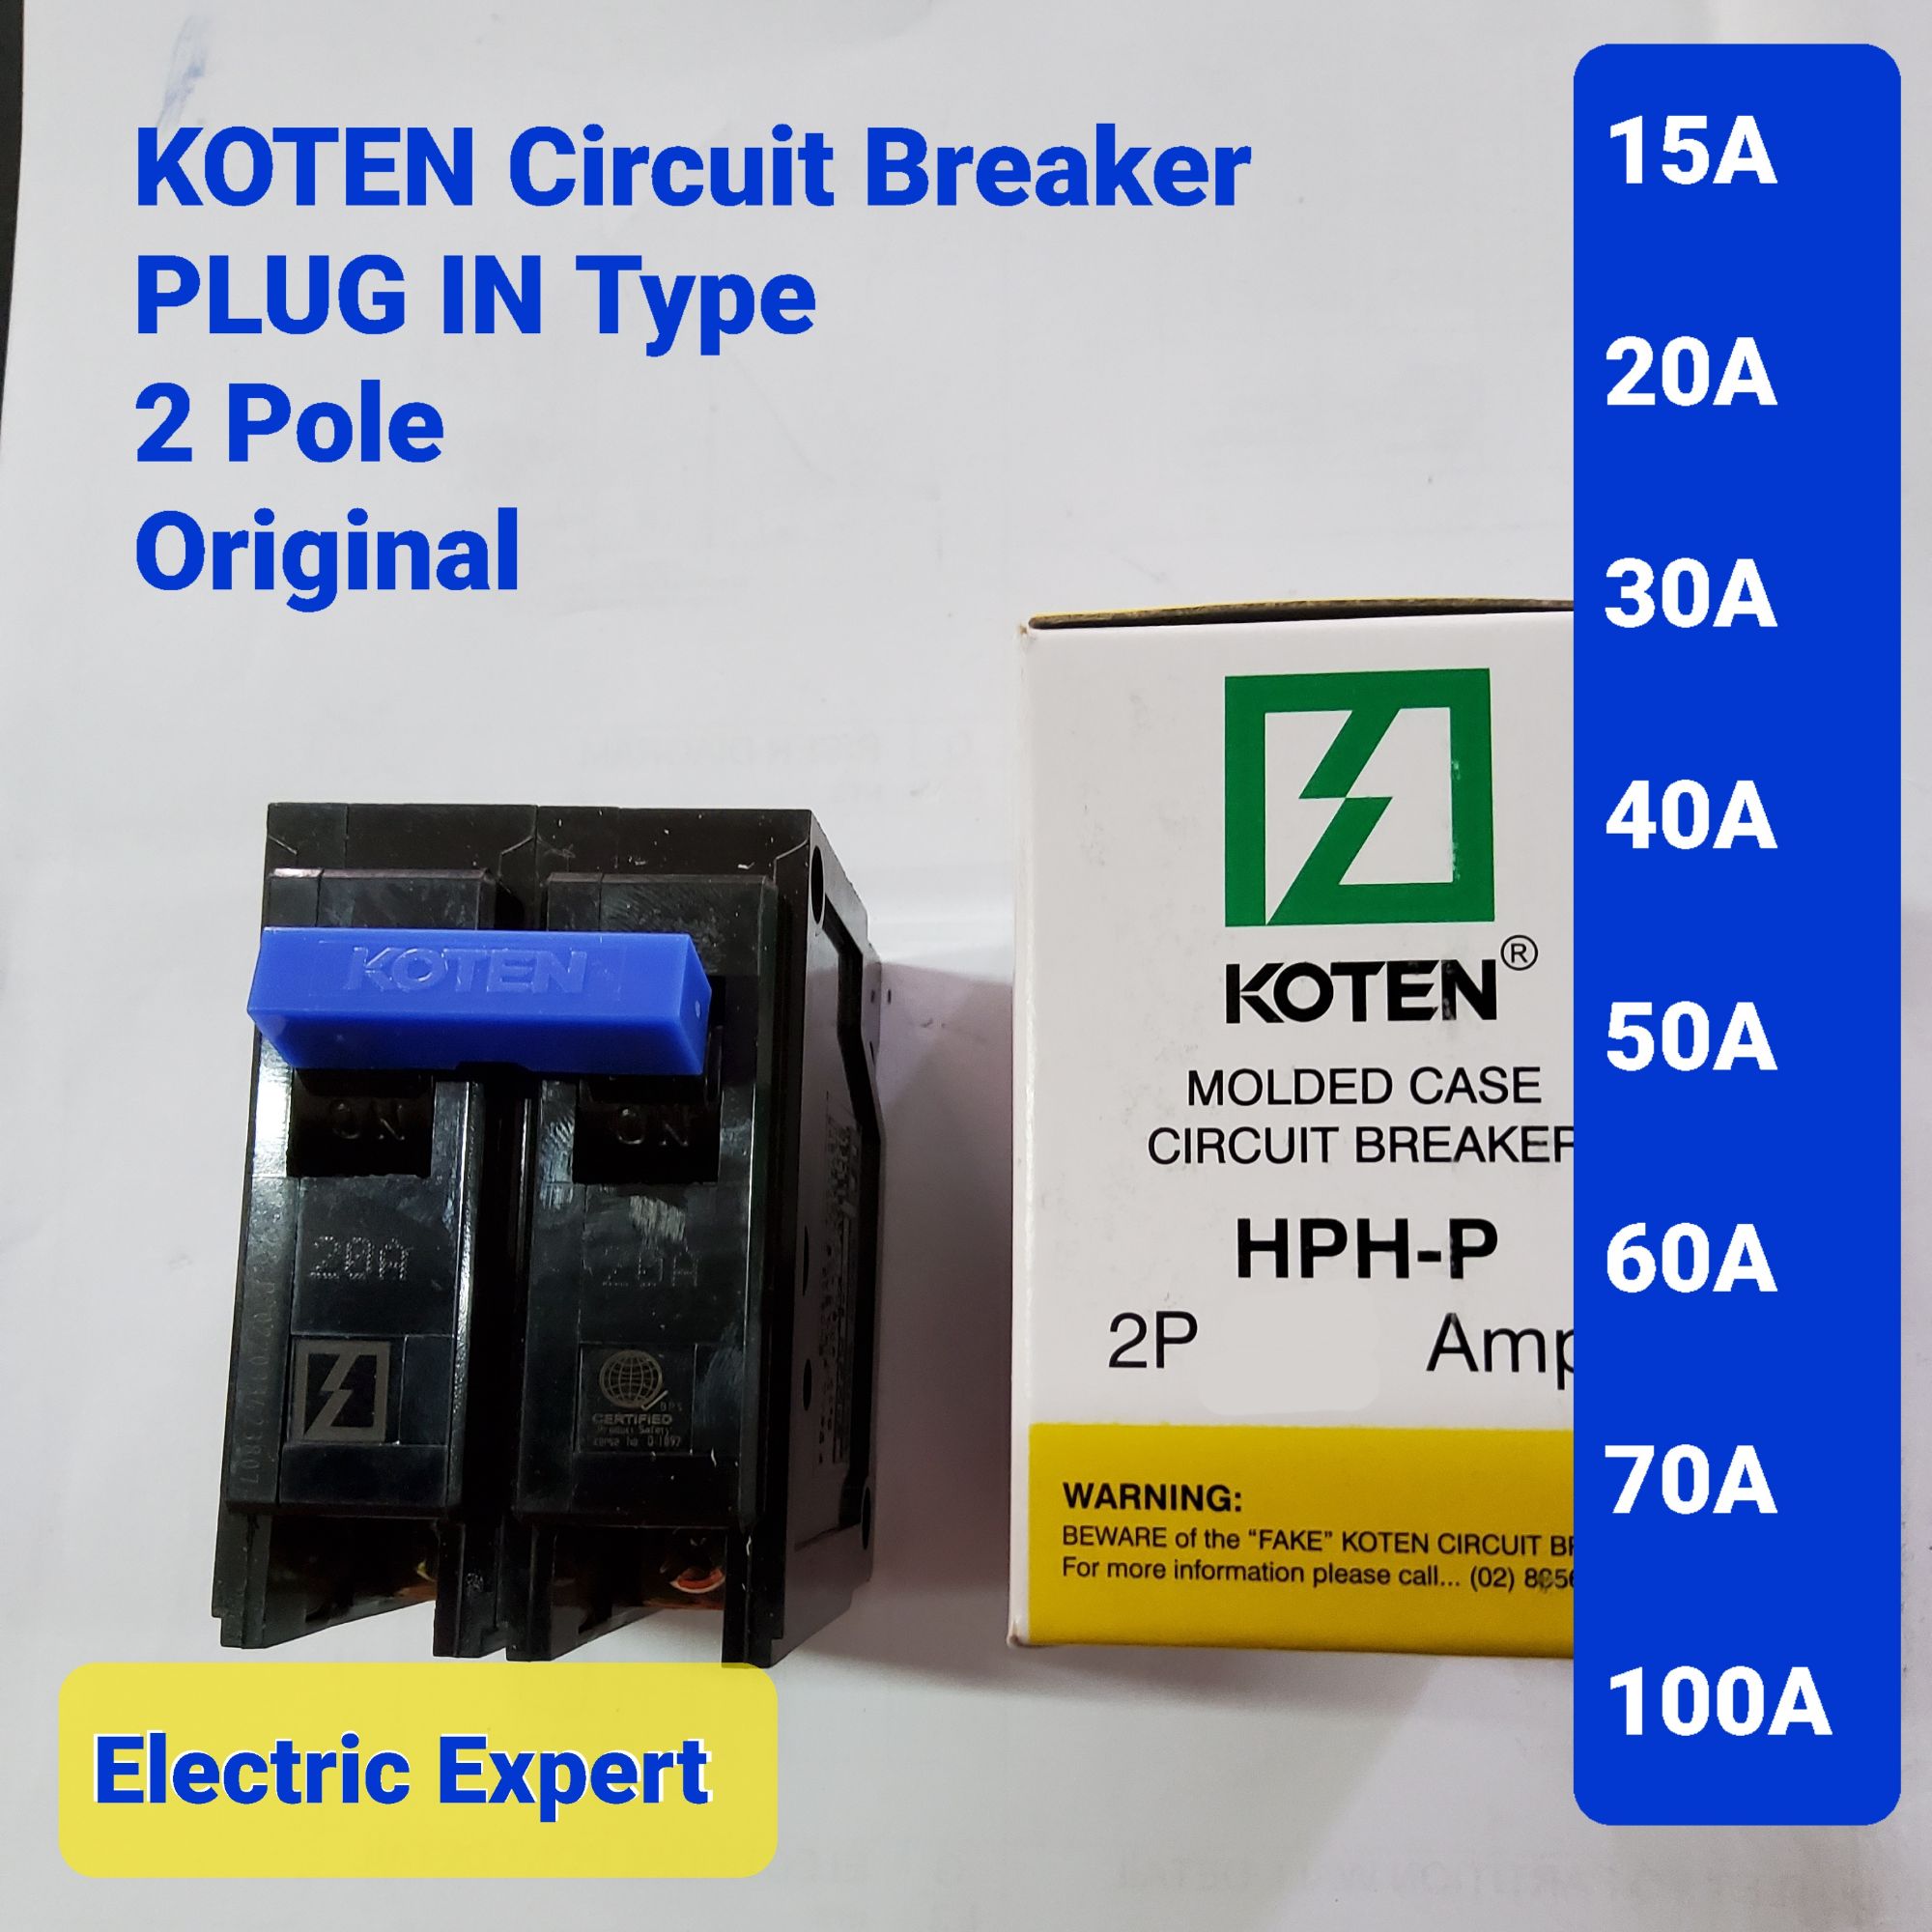 Koten Circuit Breaker (ORIGINAL) Plug In 2Pole. 15A, 20A, 30A, 40A, 50A ...